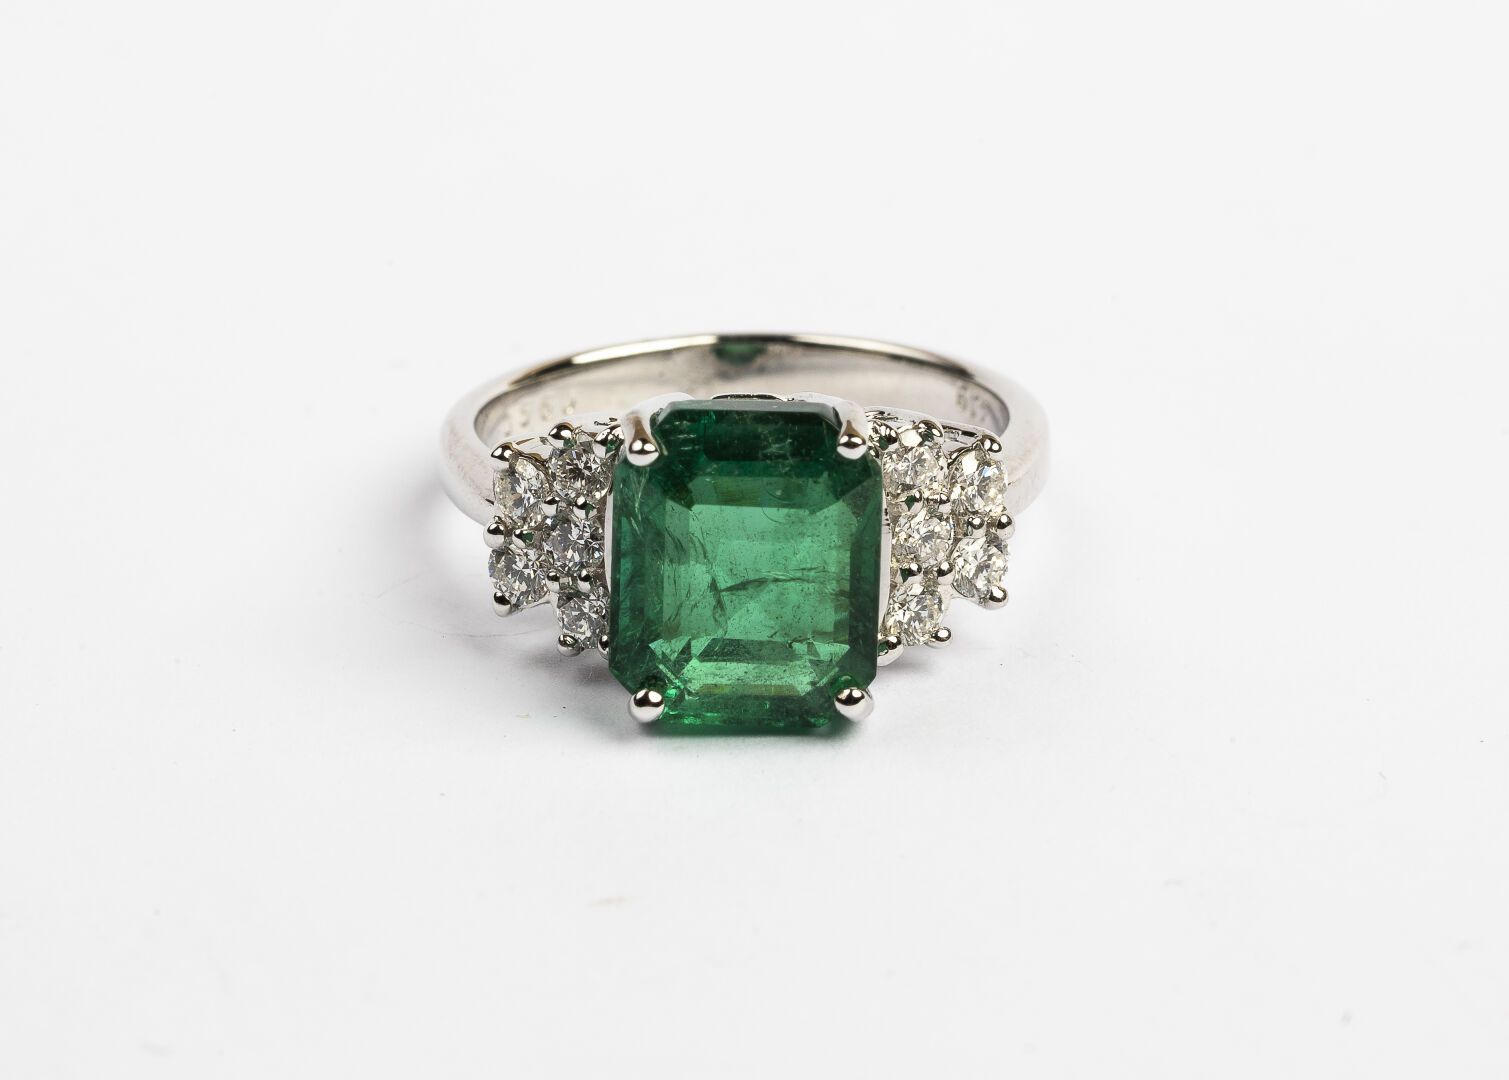 Null 戒指

白金材质，750°/°。

镶嵌着一颗约4克拉的祖母绿，并镶有钻石

毛重：5.2克 - TD.55

(划痕)